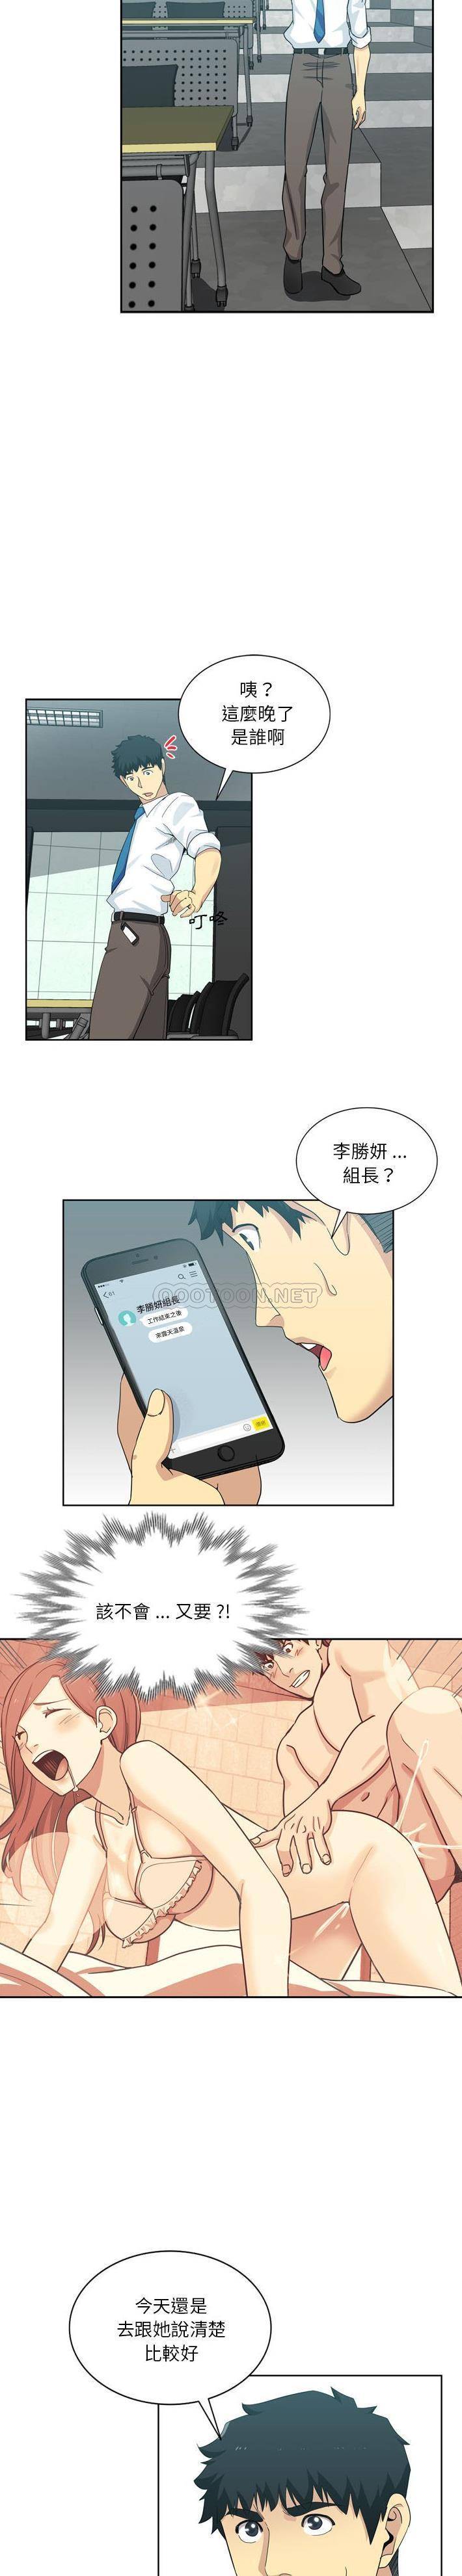 韩国污漫画 危險純友誼 第17话 10